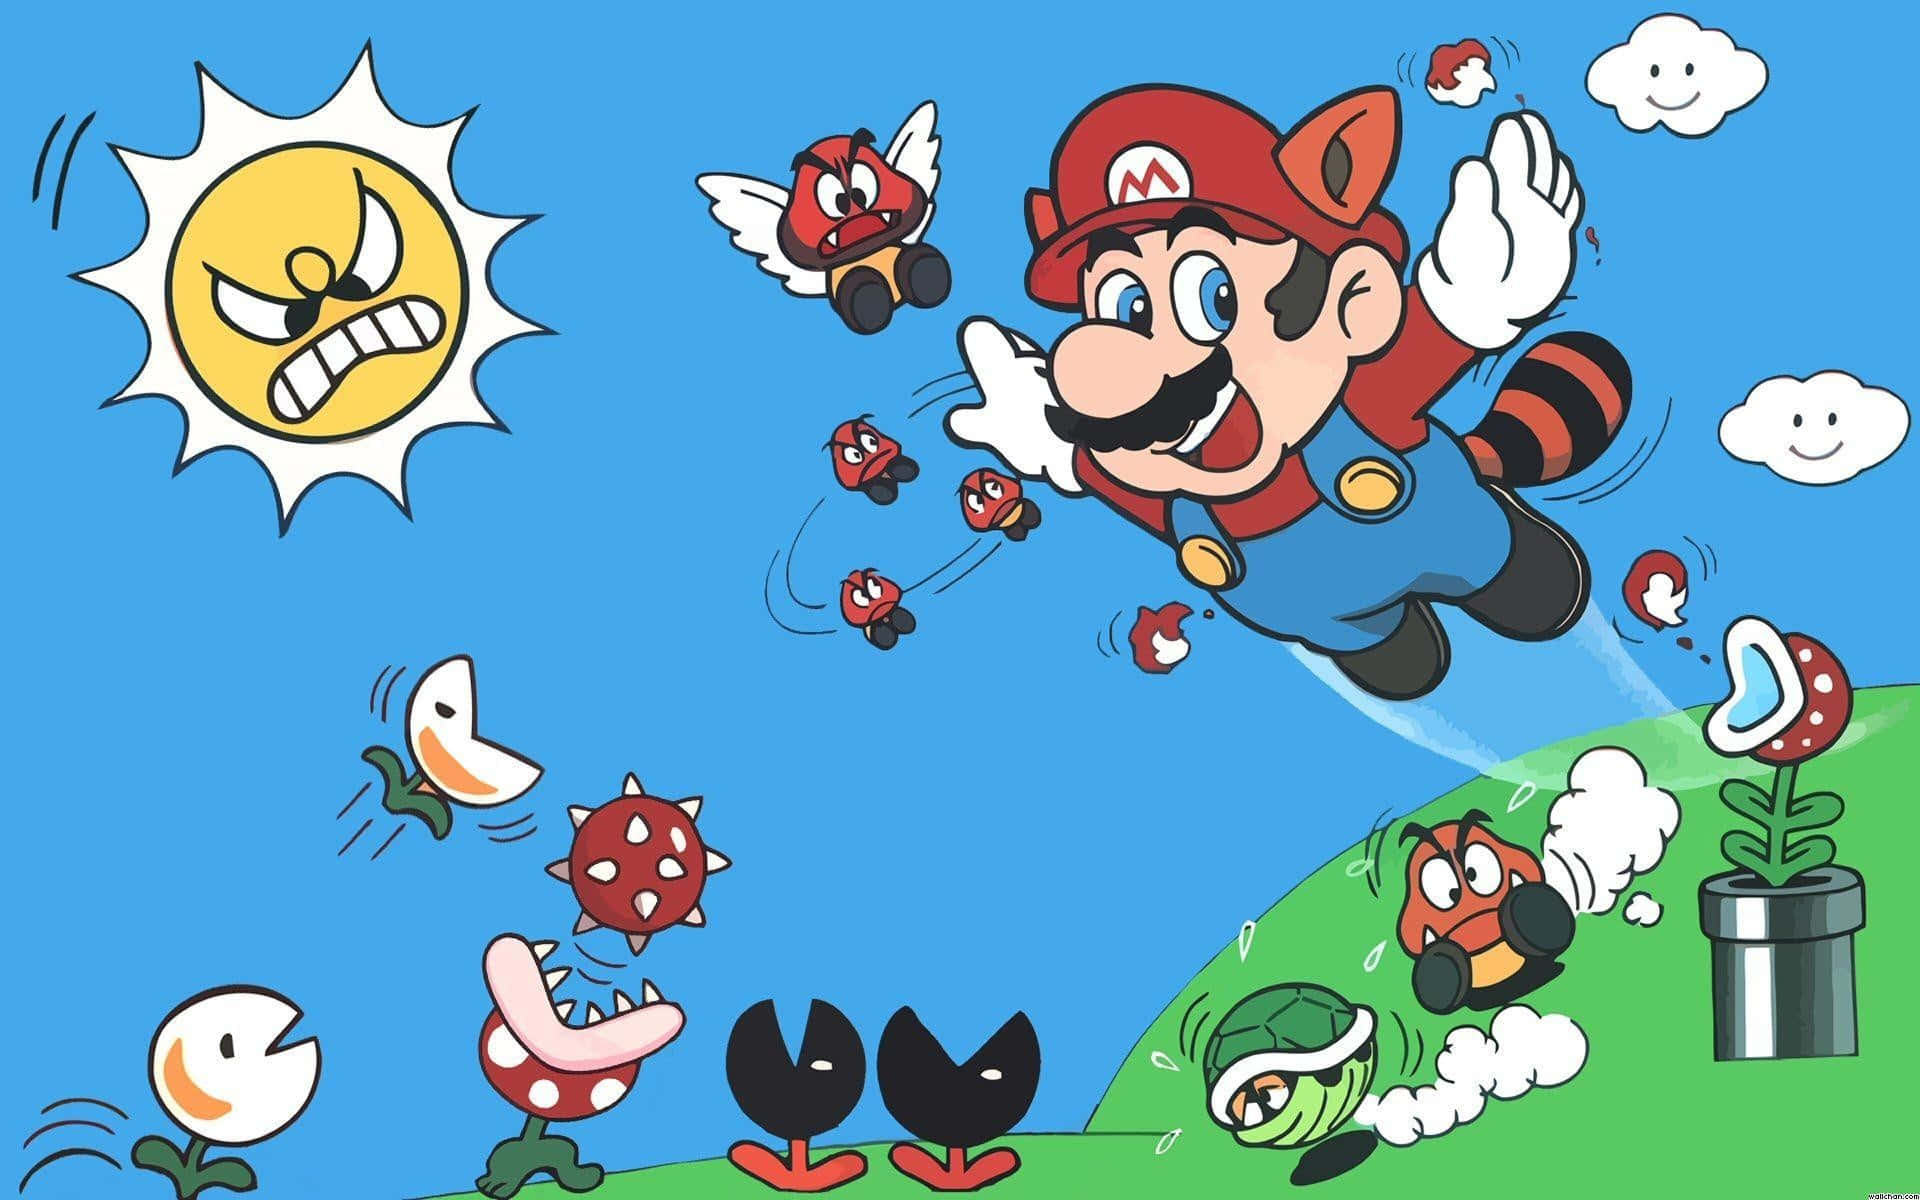 Classic 8-bit Mario in action Wallpaper